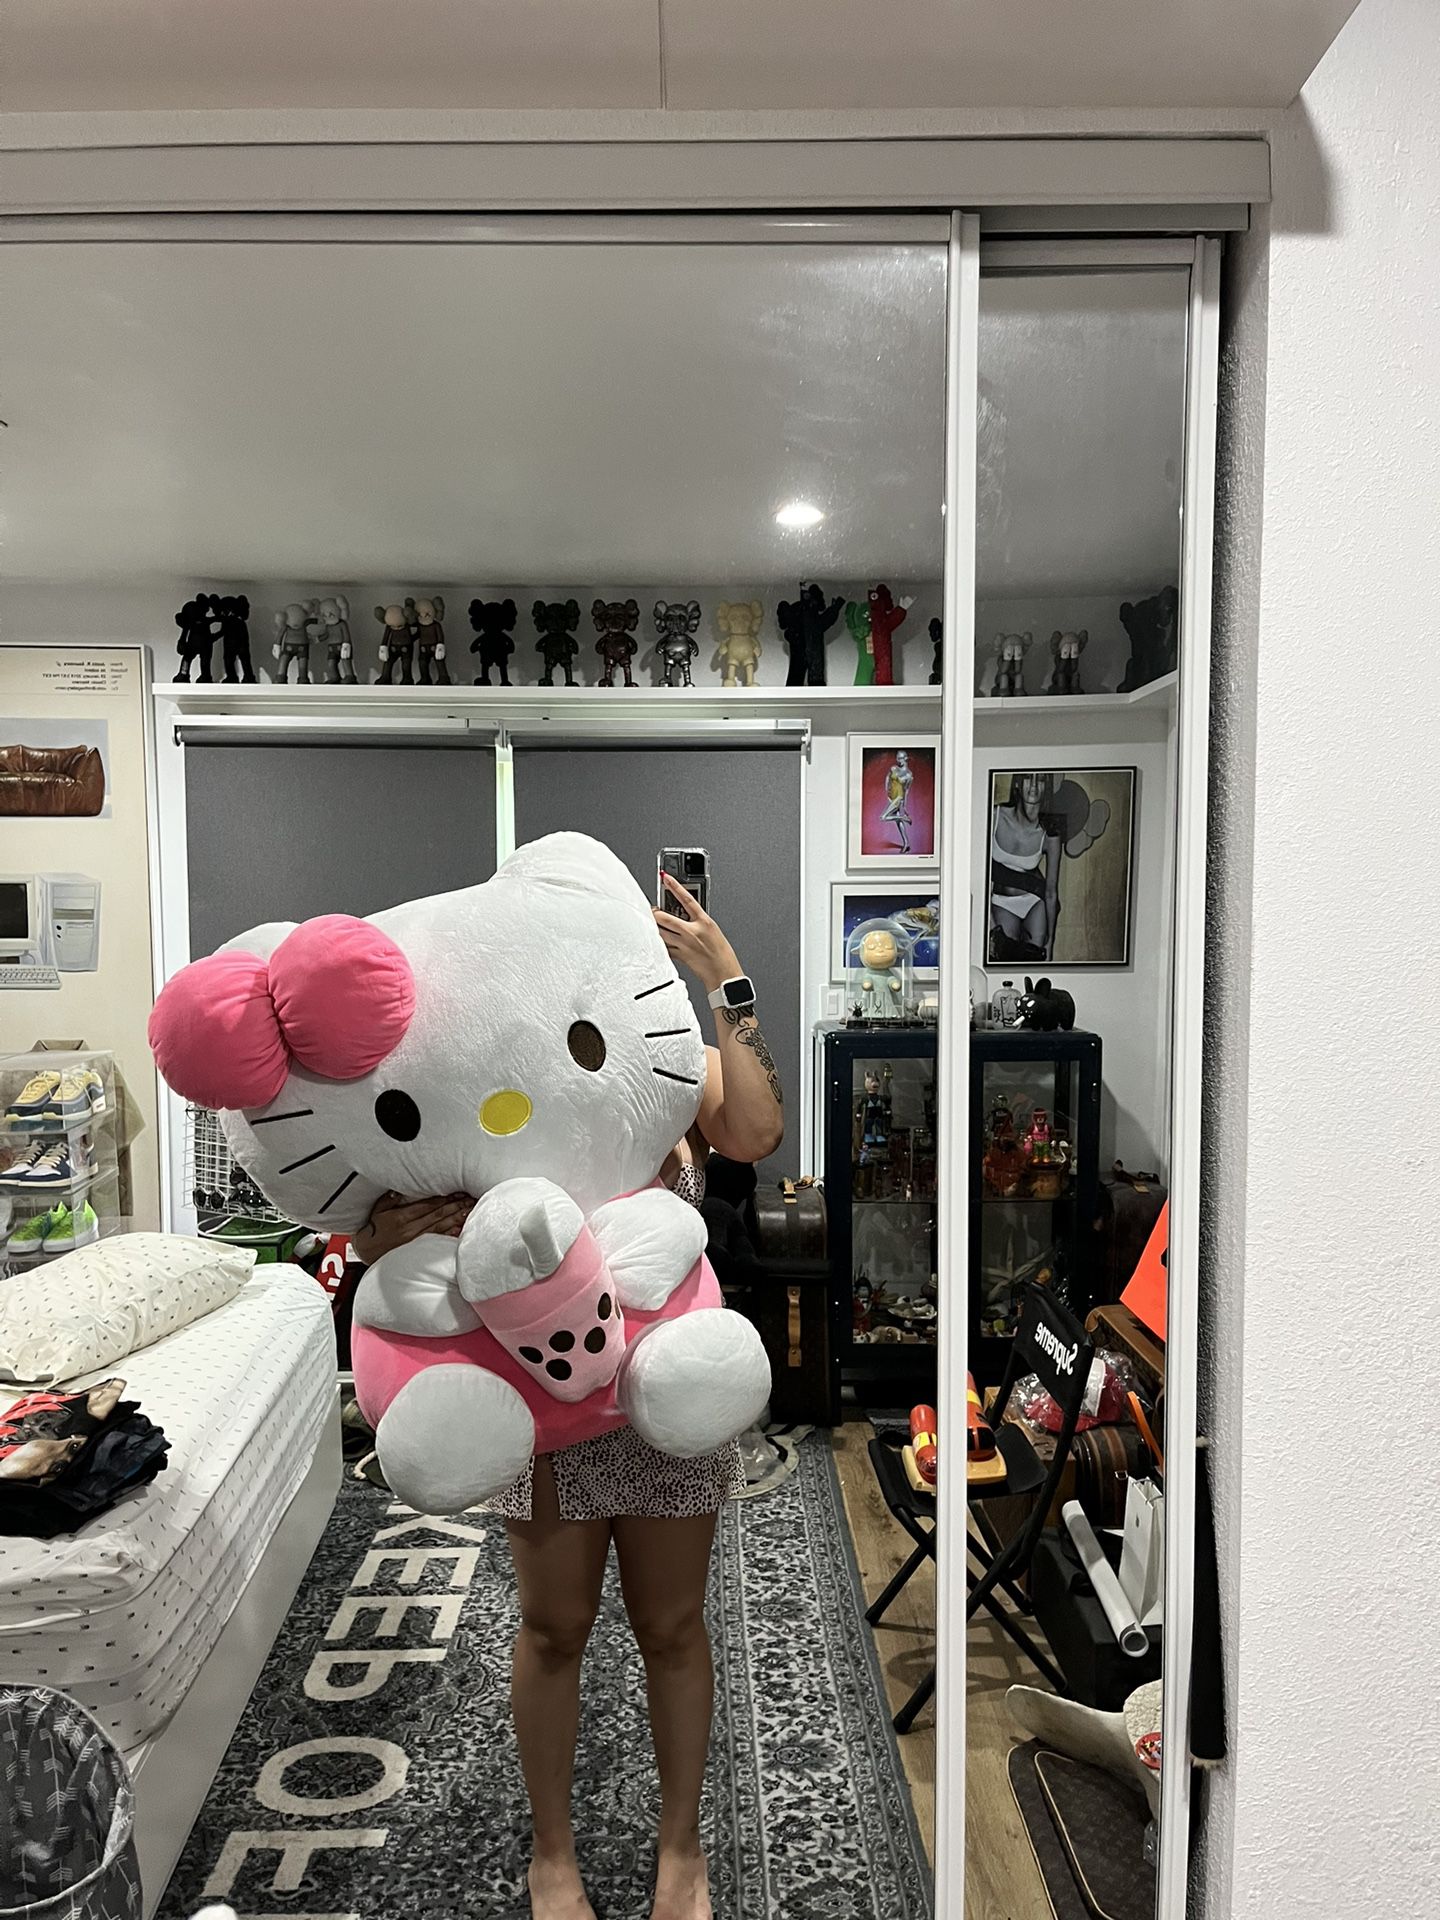 Giant Hello Kitty Plush